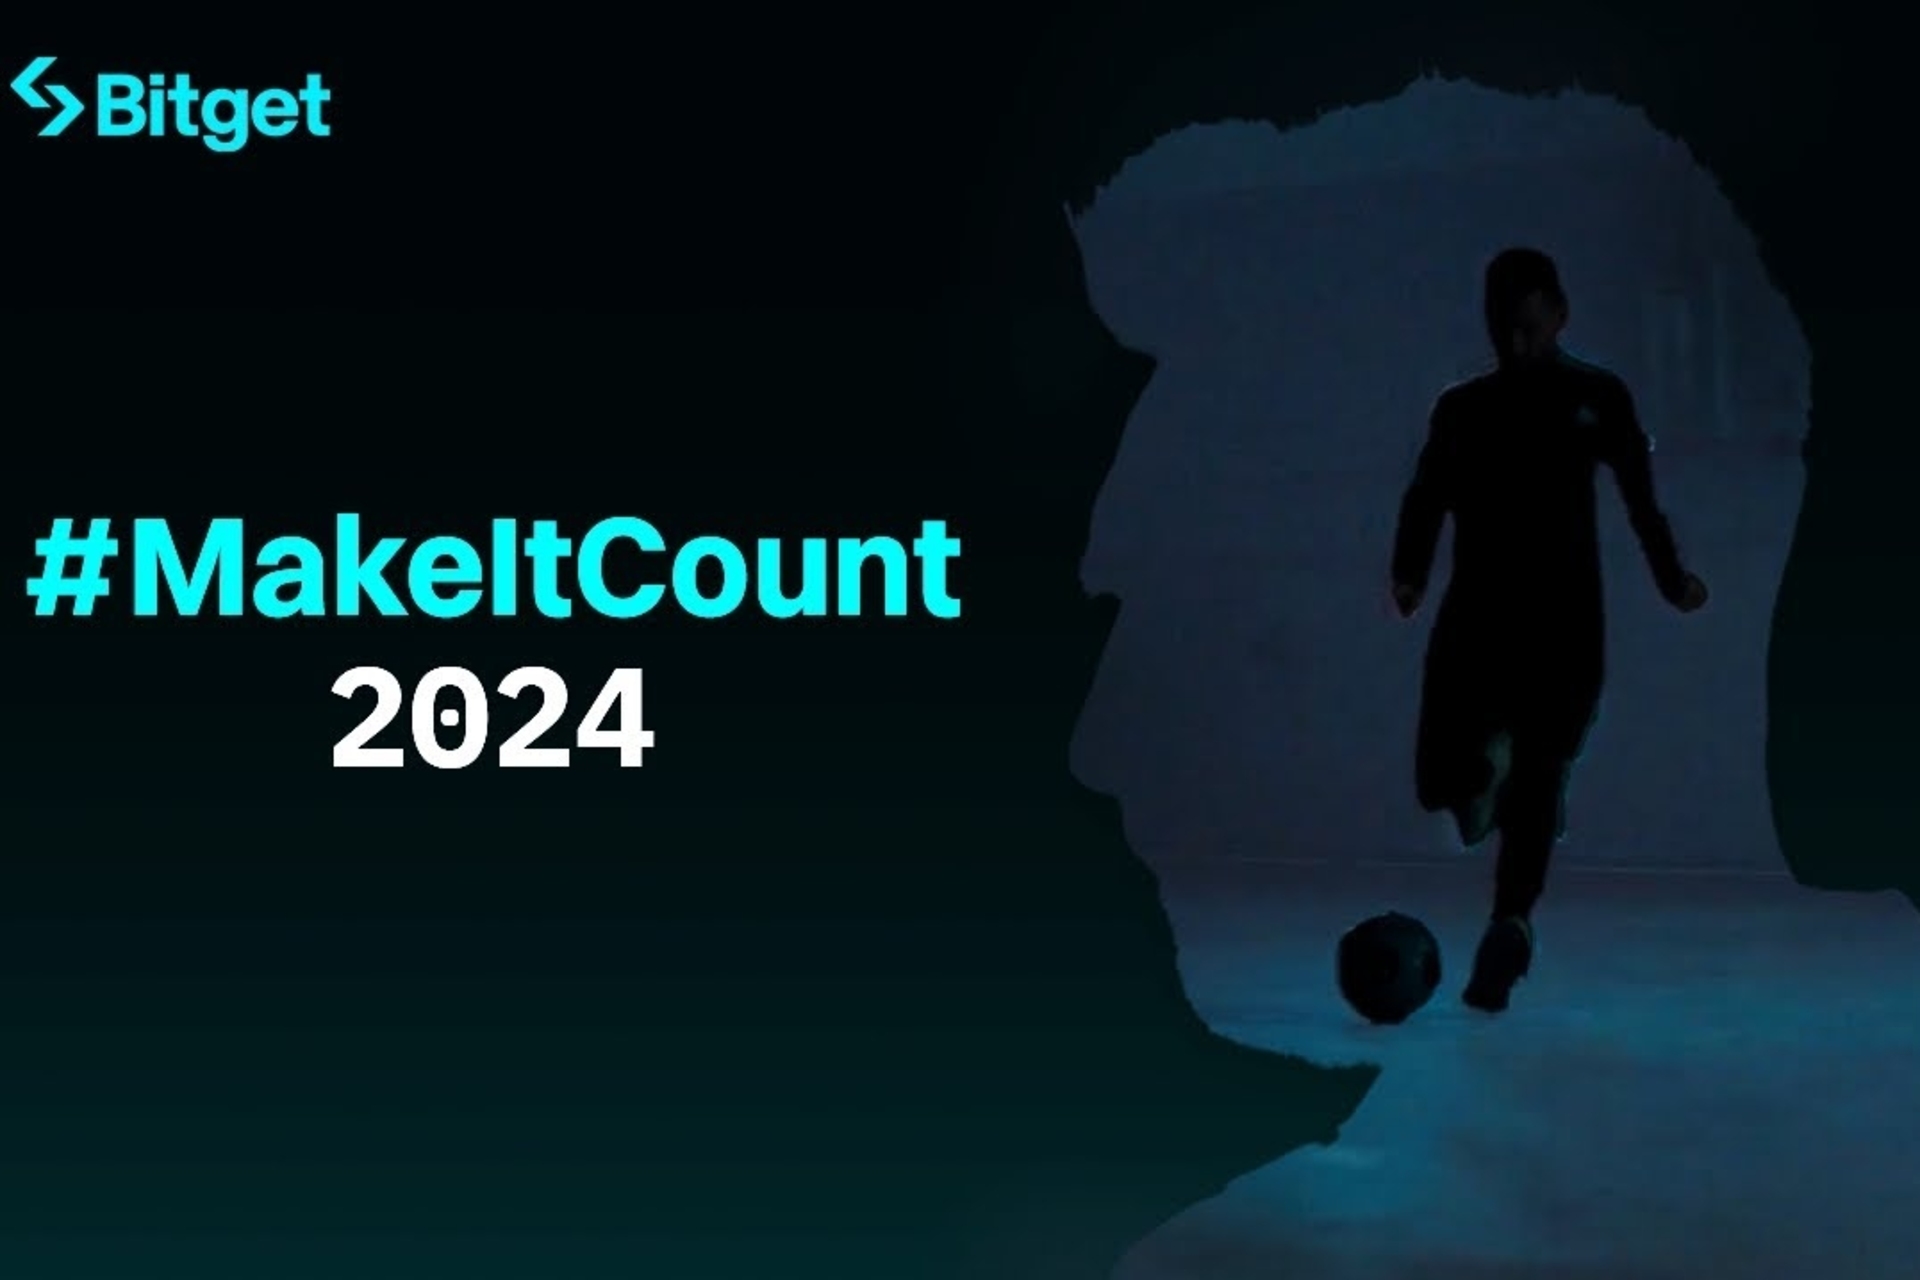 Lionel Messi: o filme #MakeItCount 2024 simboliza os valores fundamentais compartilhados pela exchange cripto Bitget e pelo jogador de futebol argentino